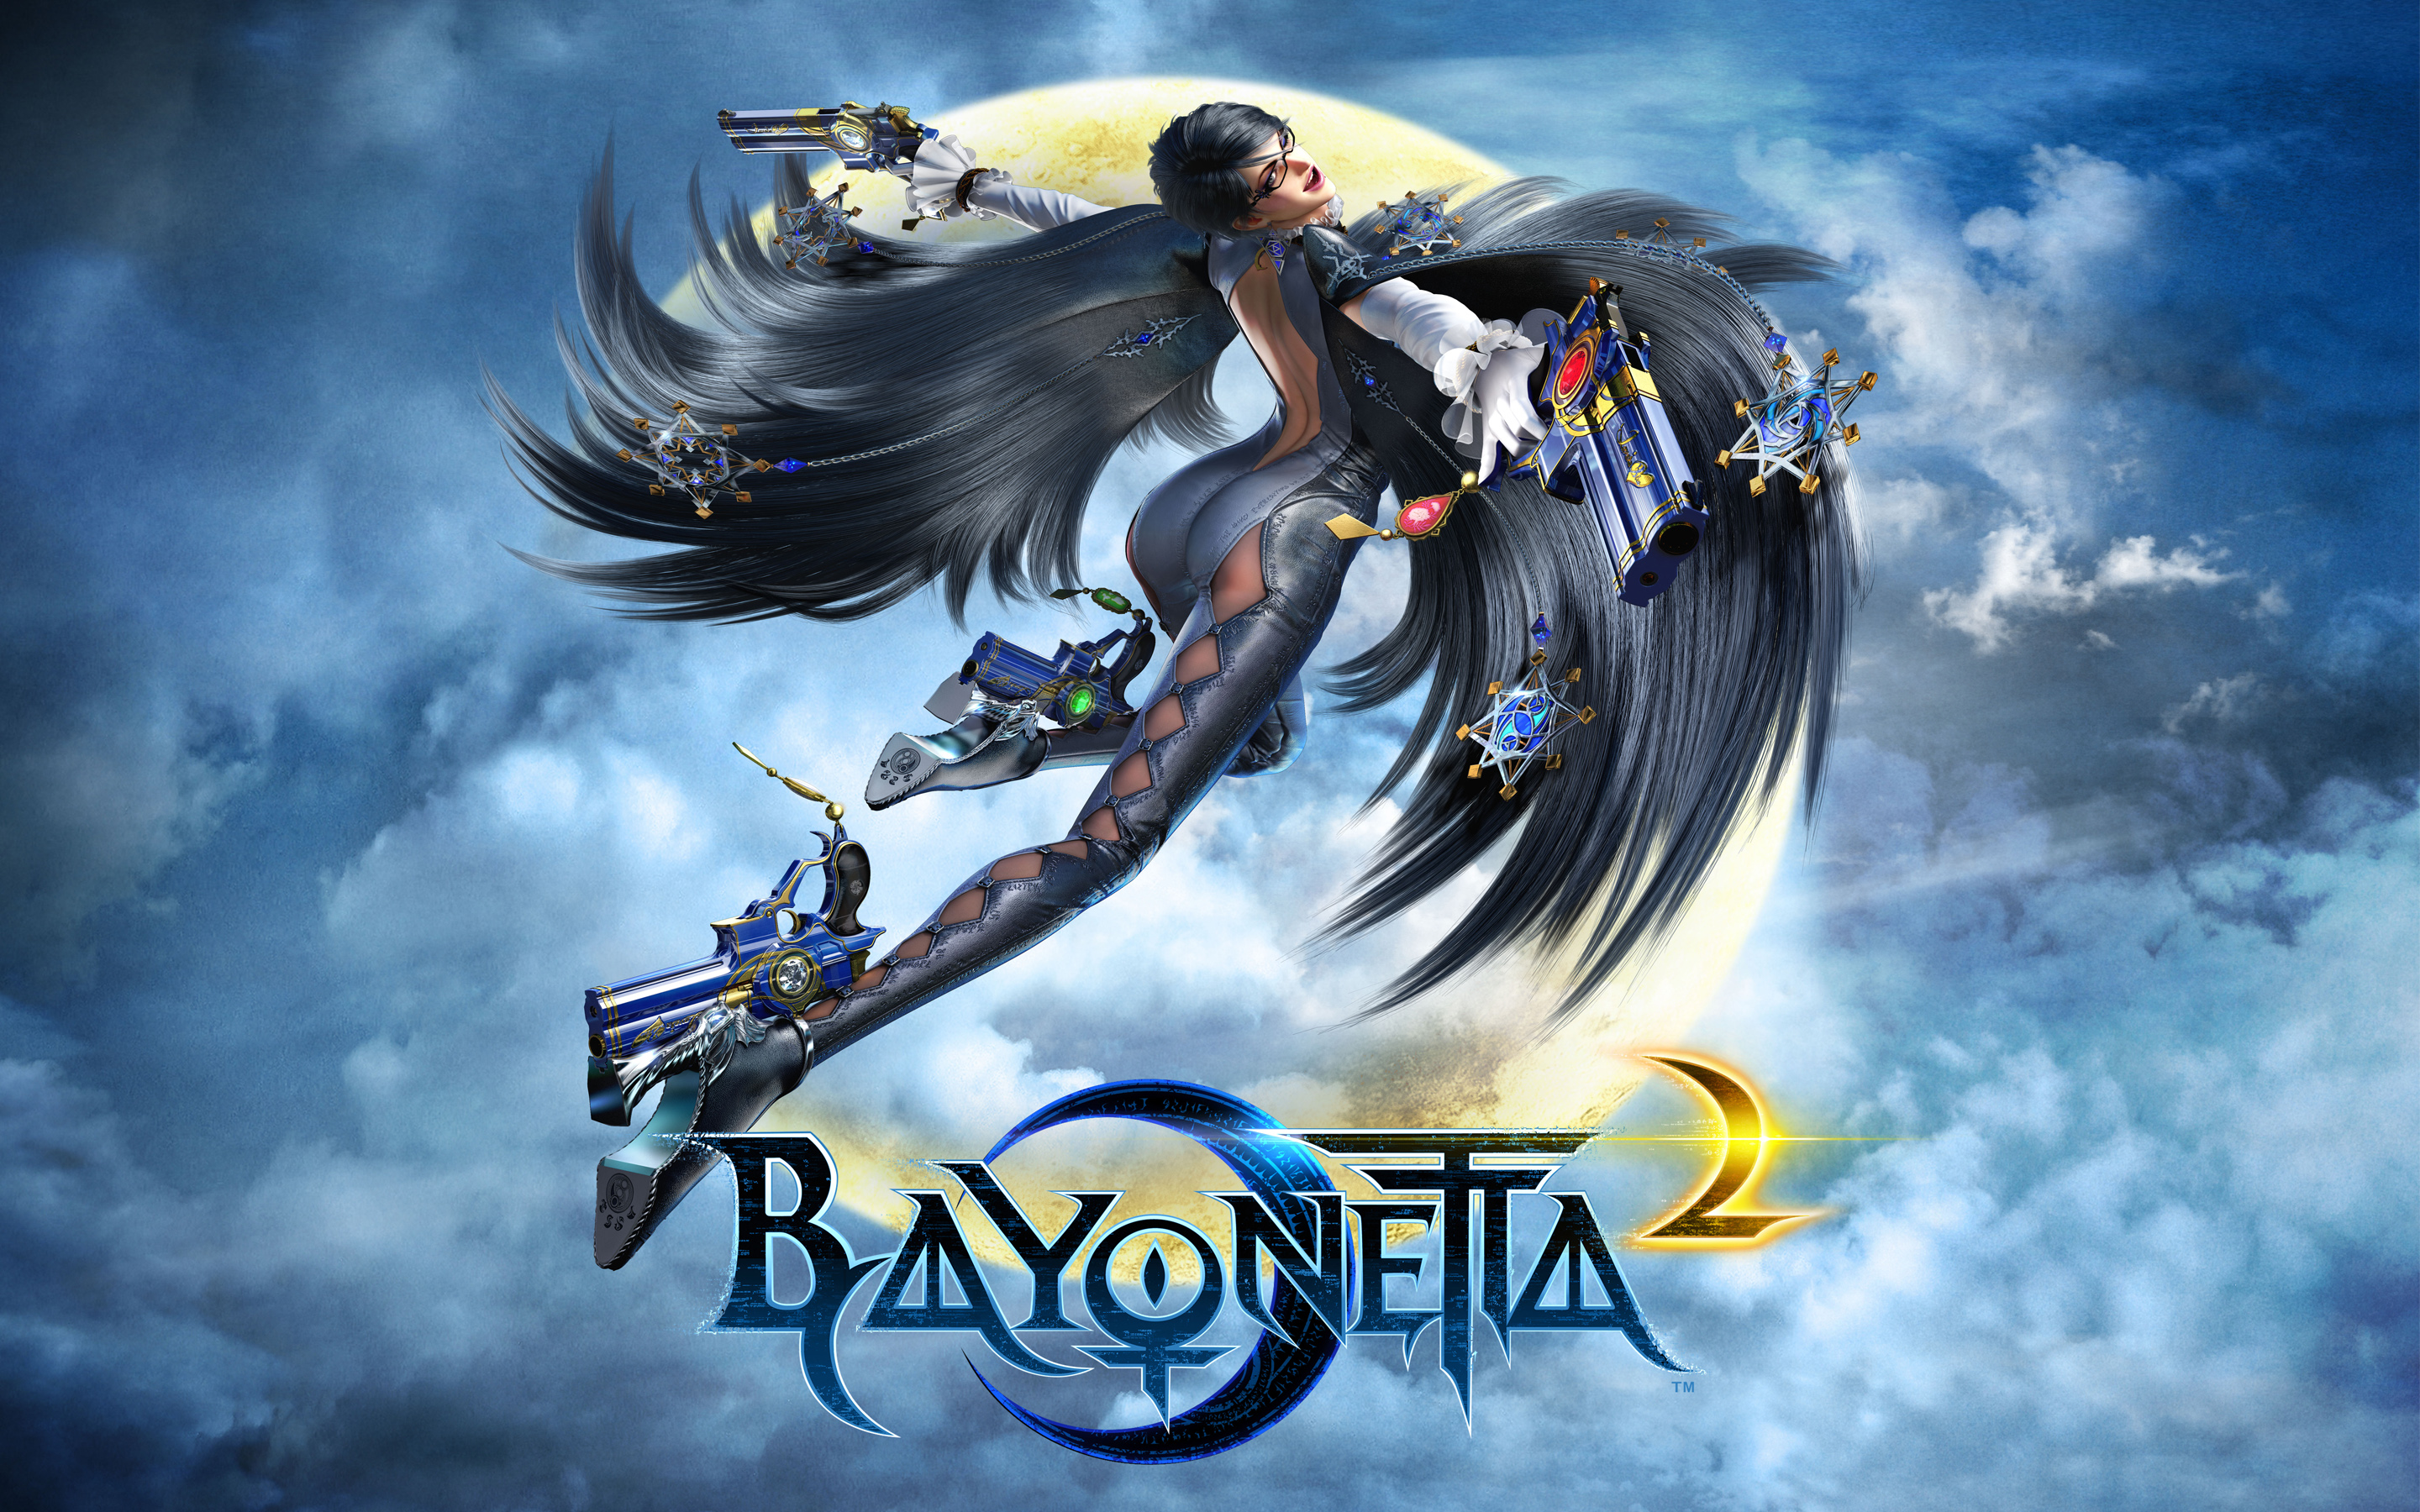 E3 2014: Bayonetta 2 Preview